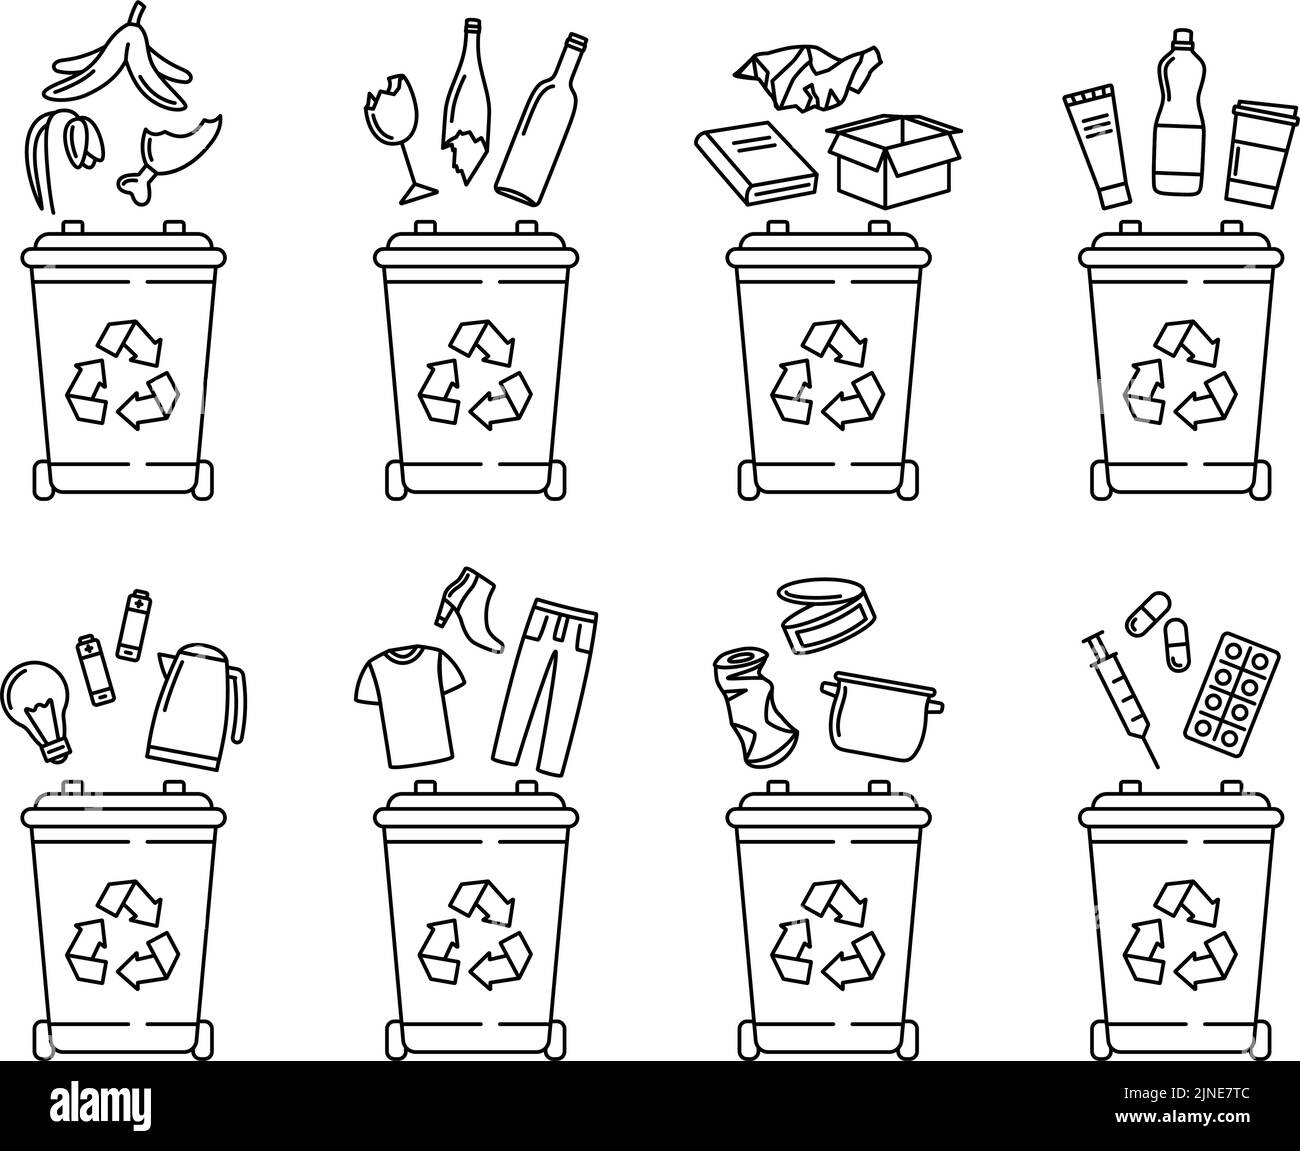 Segregación de basura Imágenes de stock en blanco y negro - Alamy